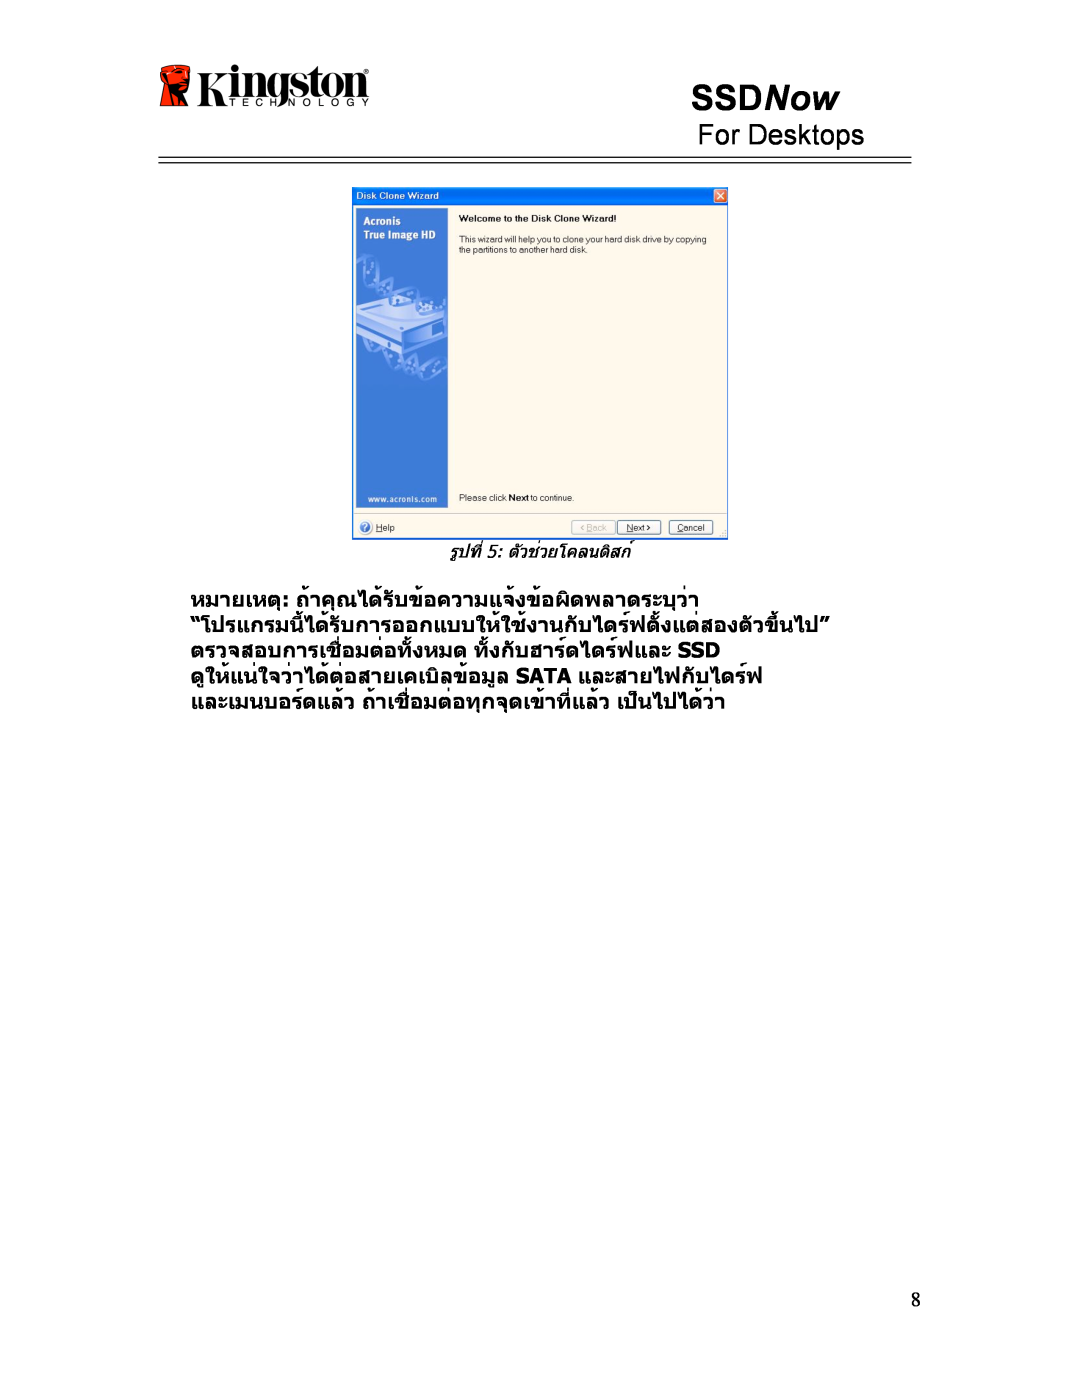 Kingston Technology 07-16-2009 manual SSDNow, For Desktops, หมายเหตุ ถ้าคุณได้รับข้อความแจ้งข้อผิดพลาดระบุว่า 